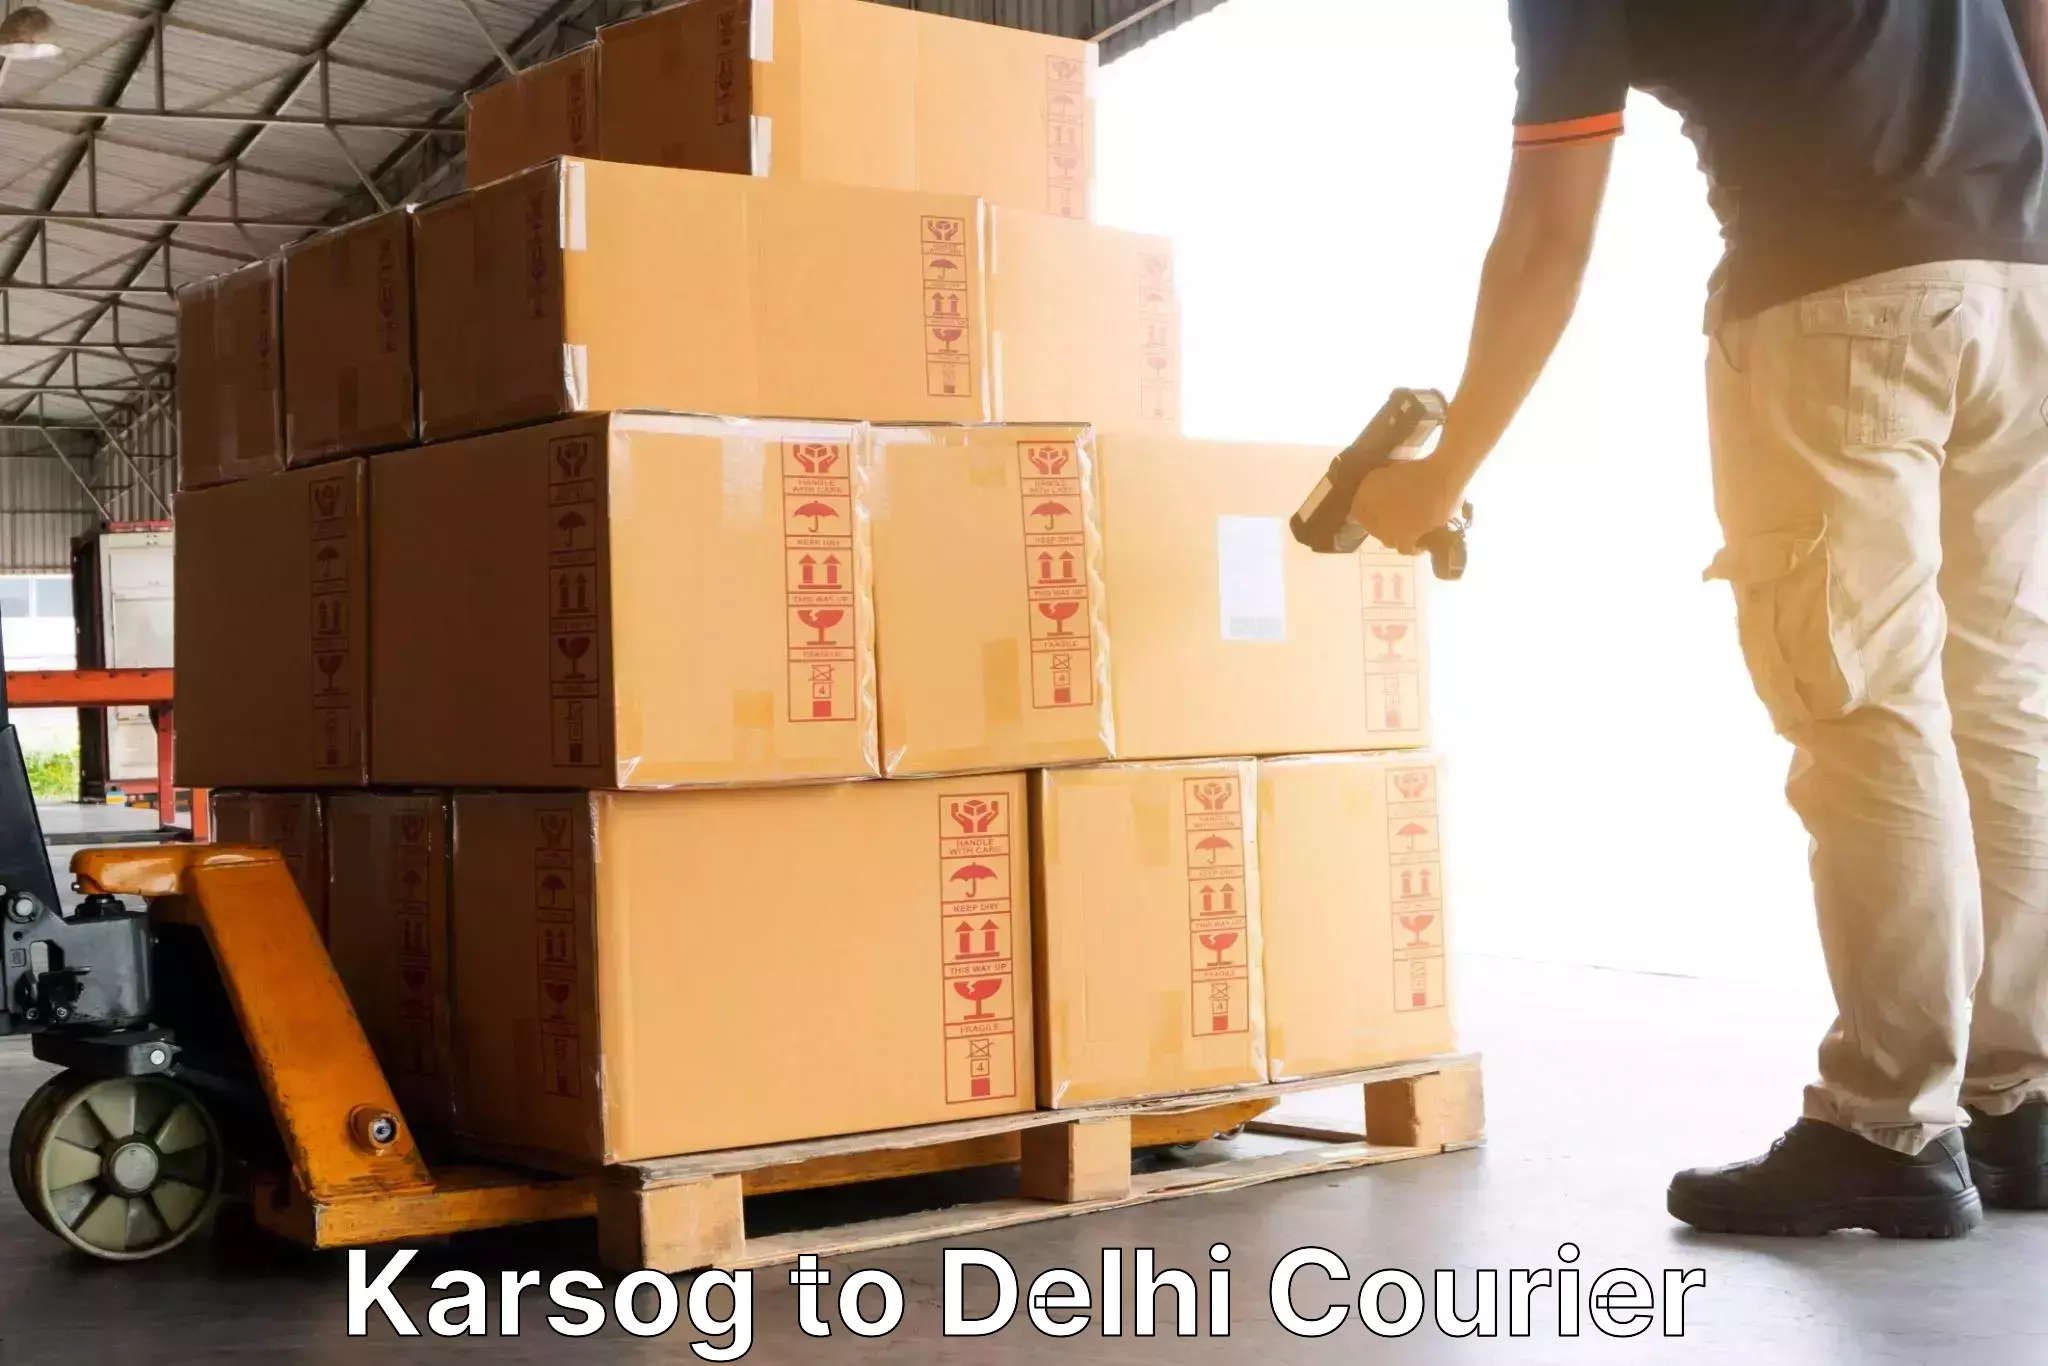 Cost-effective courier solutions Karsog to Sansad Marg